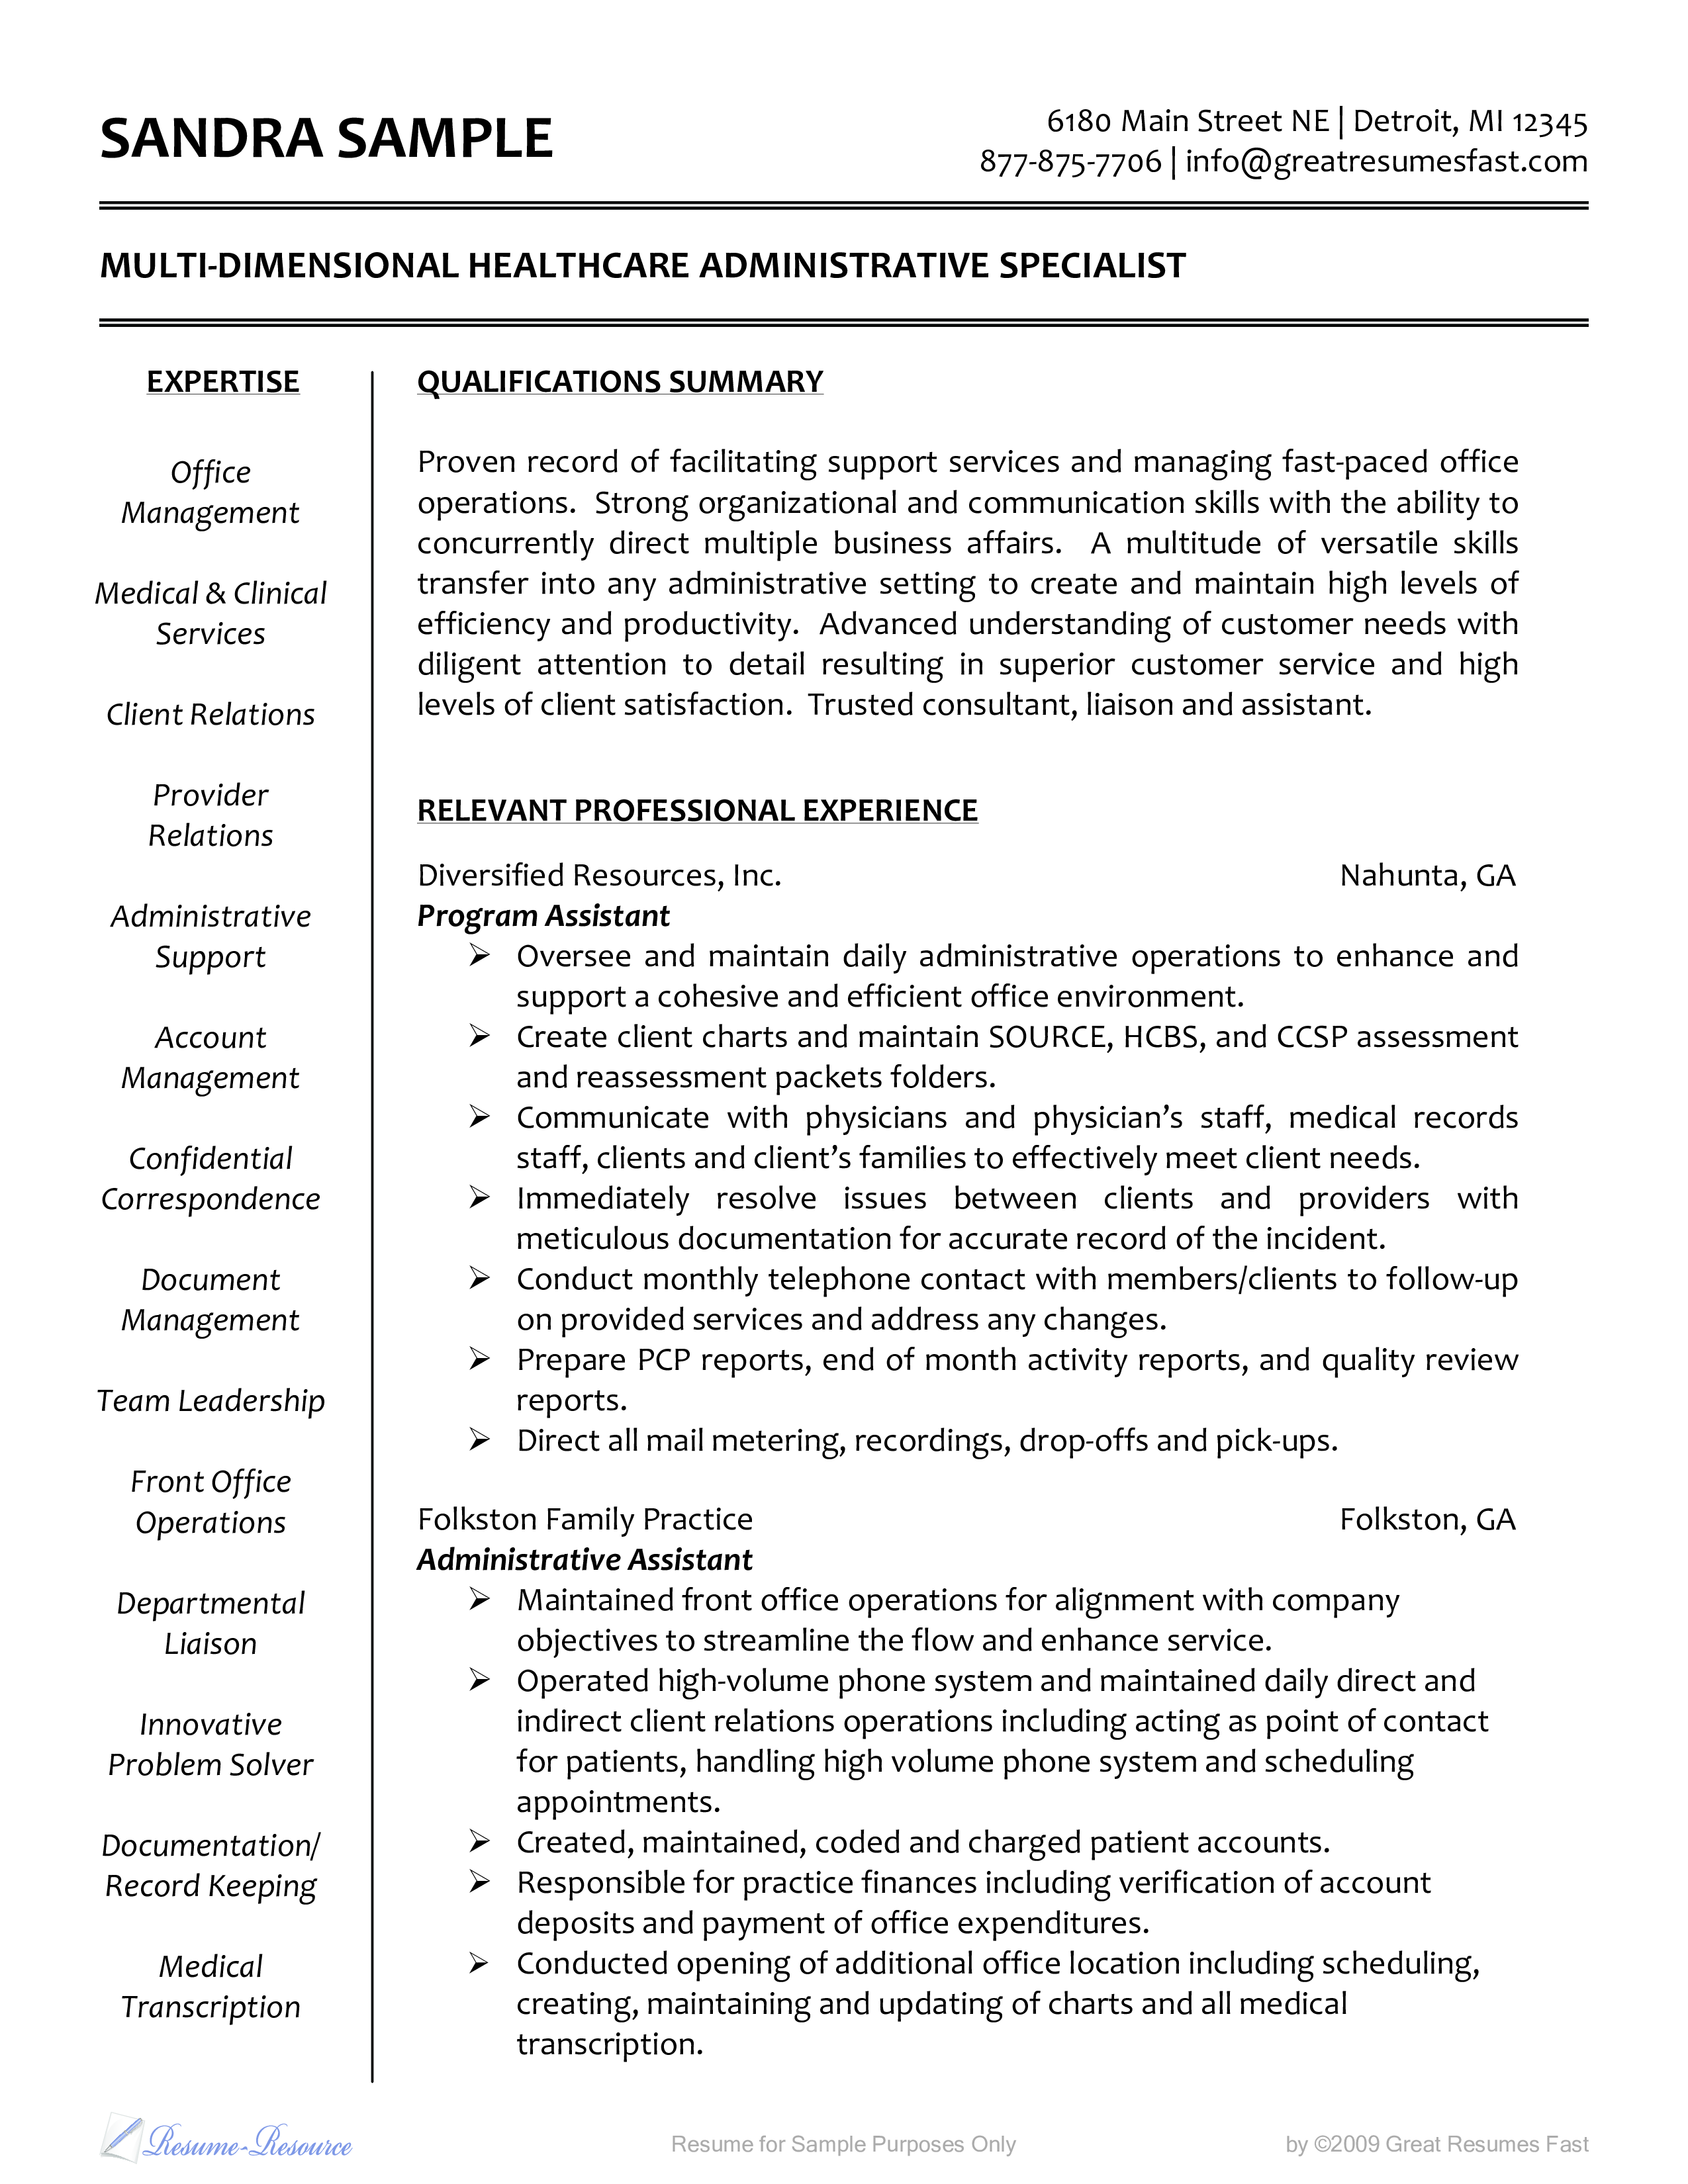 healthcare administrative resume sample plantilla imagen principal